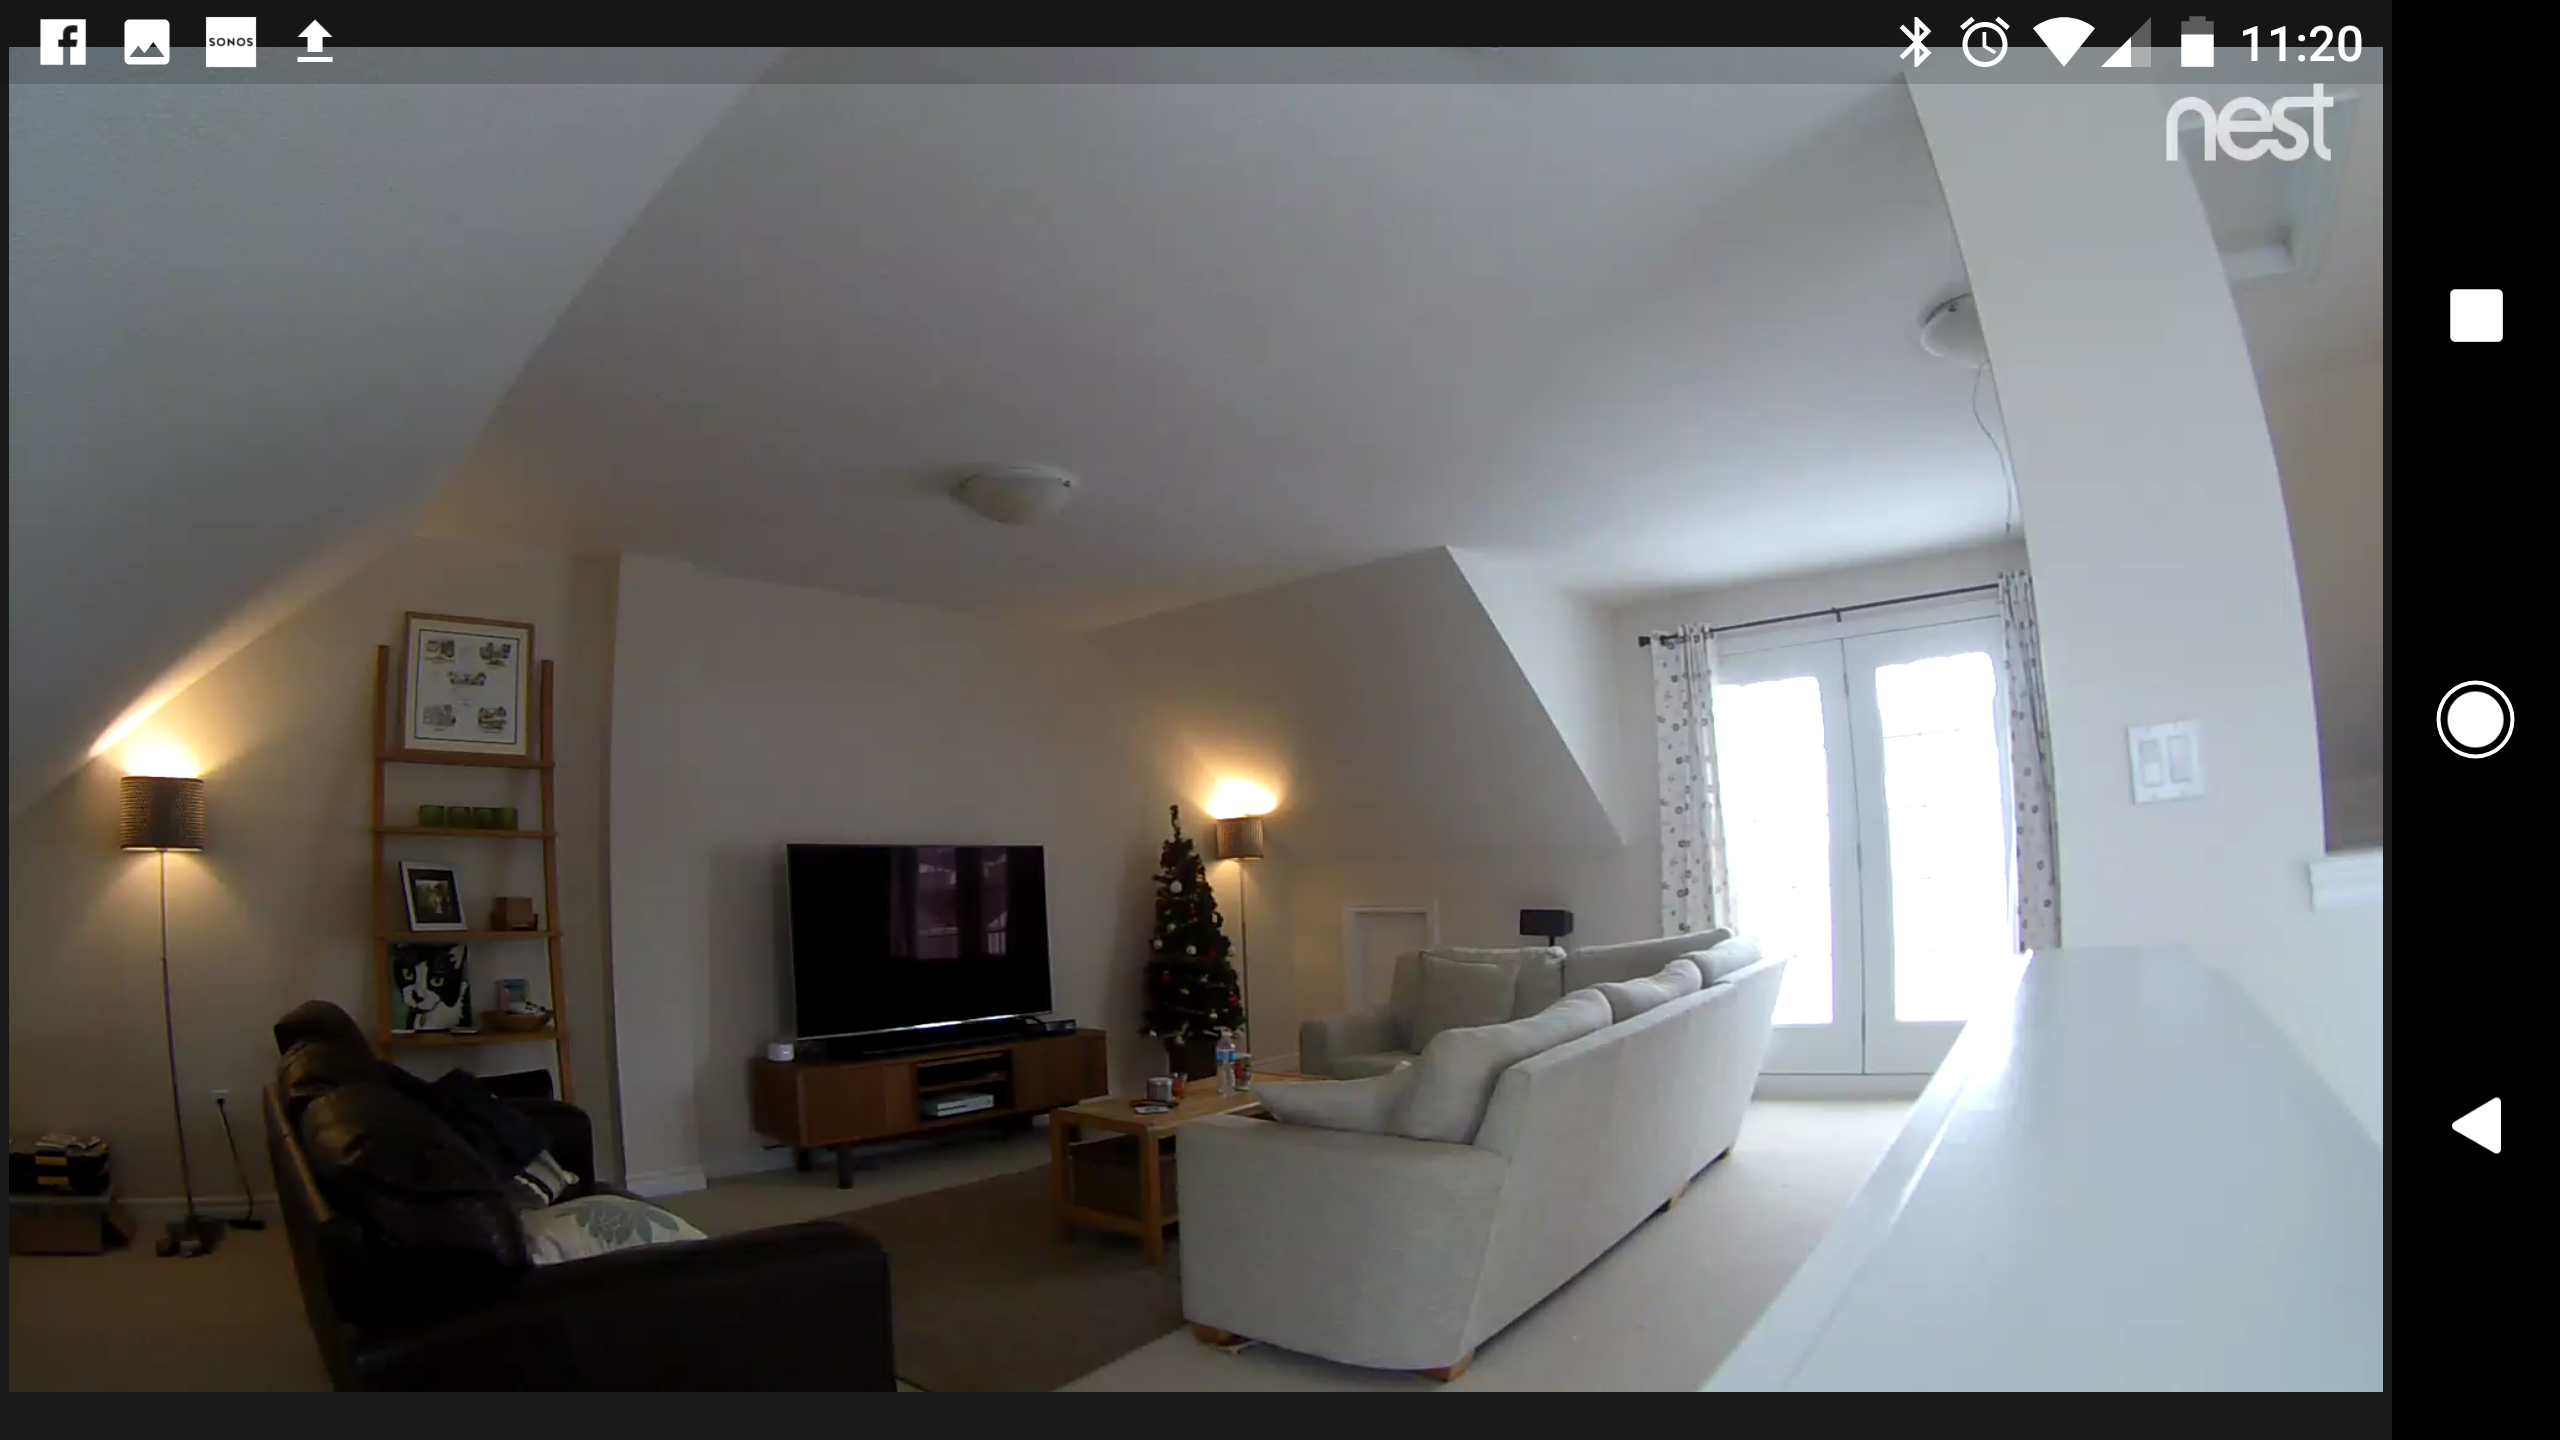 swanna smart security camera review comparison nest cam